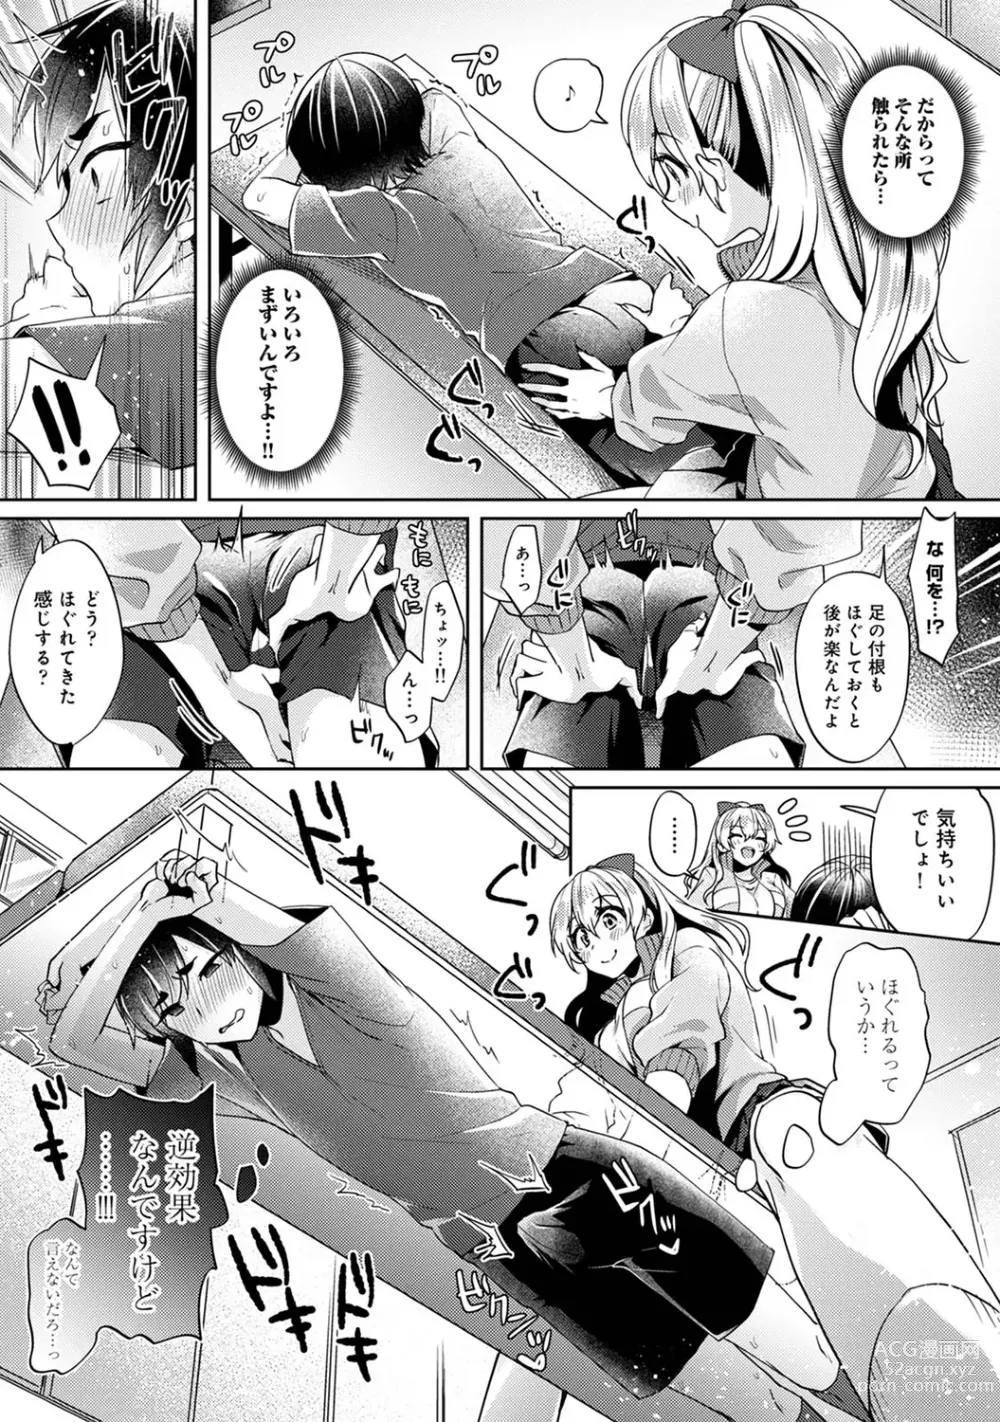 Page 9 of manga Suki Suki Diary